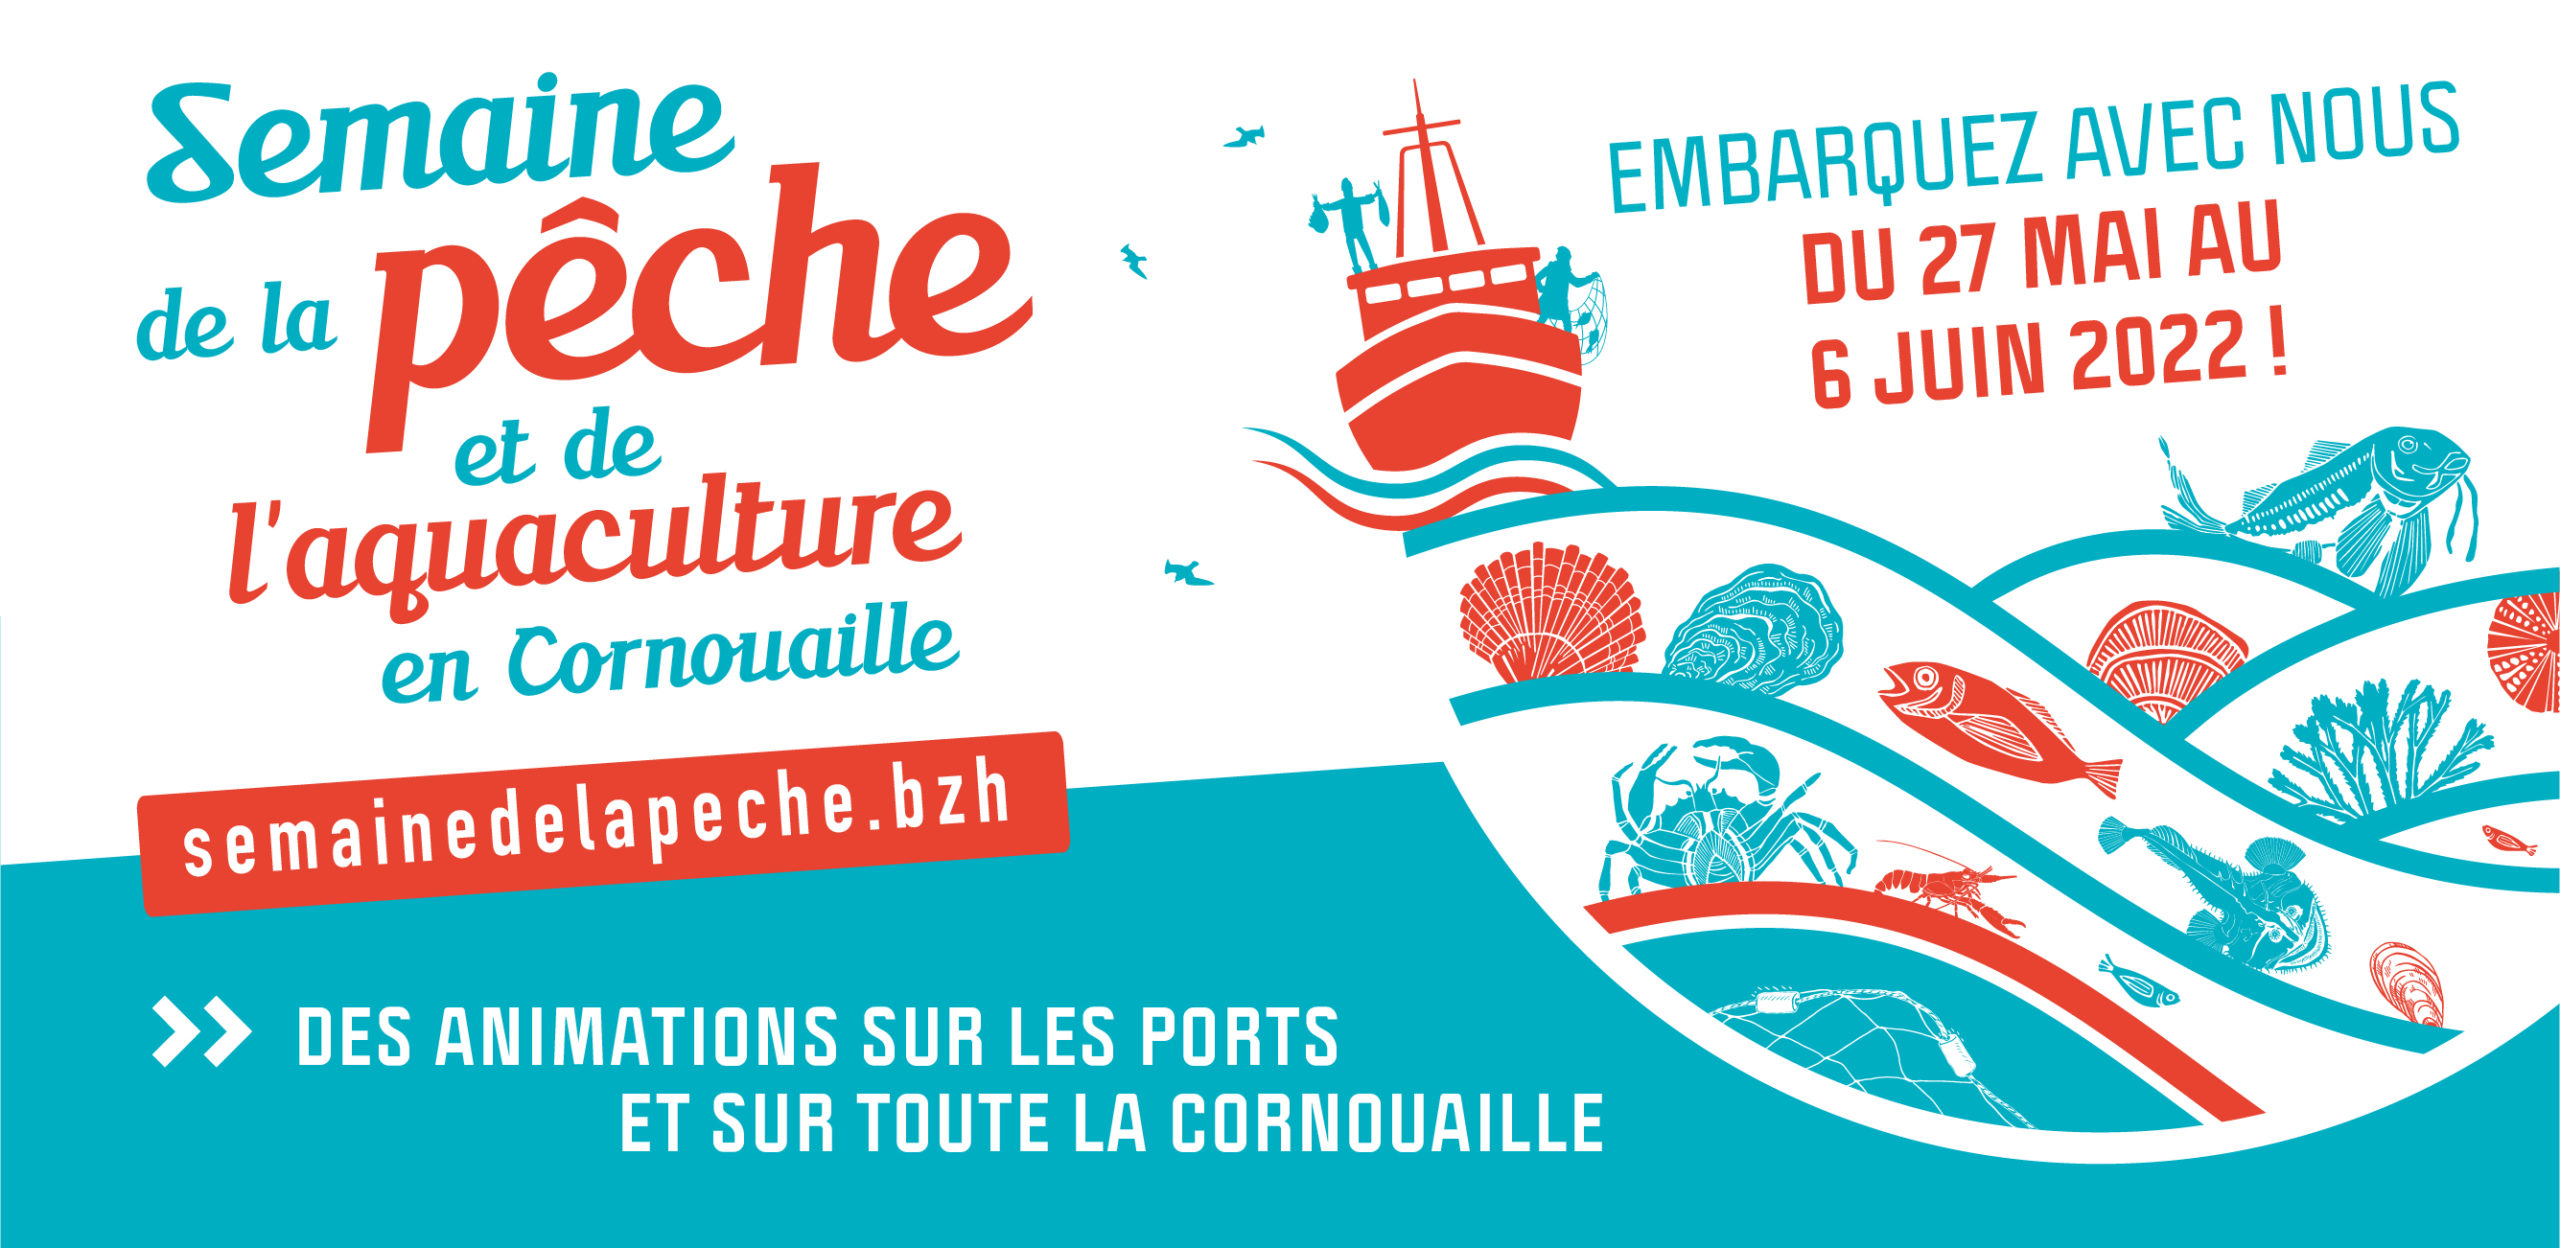 Semaine de la Pêche et de l’Aquaculture en Cornouaille, du 27 mai au 06 juin